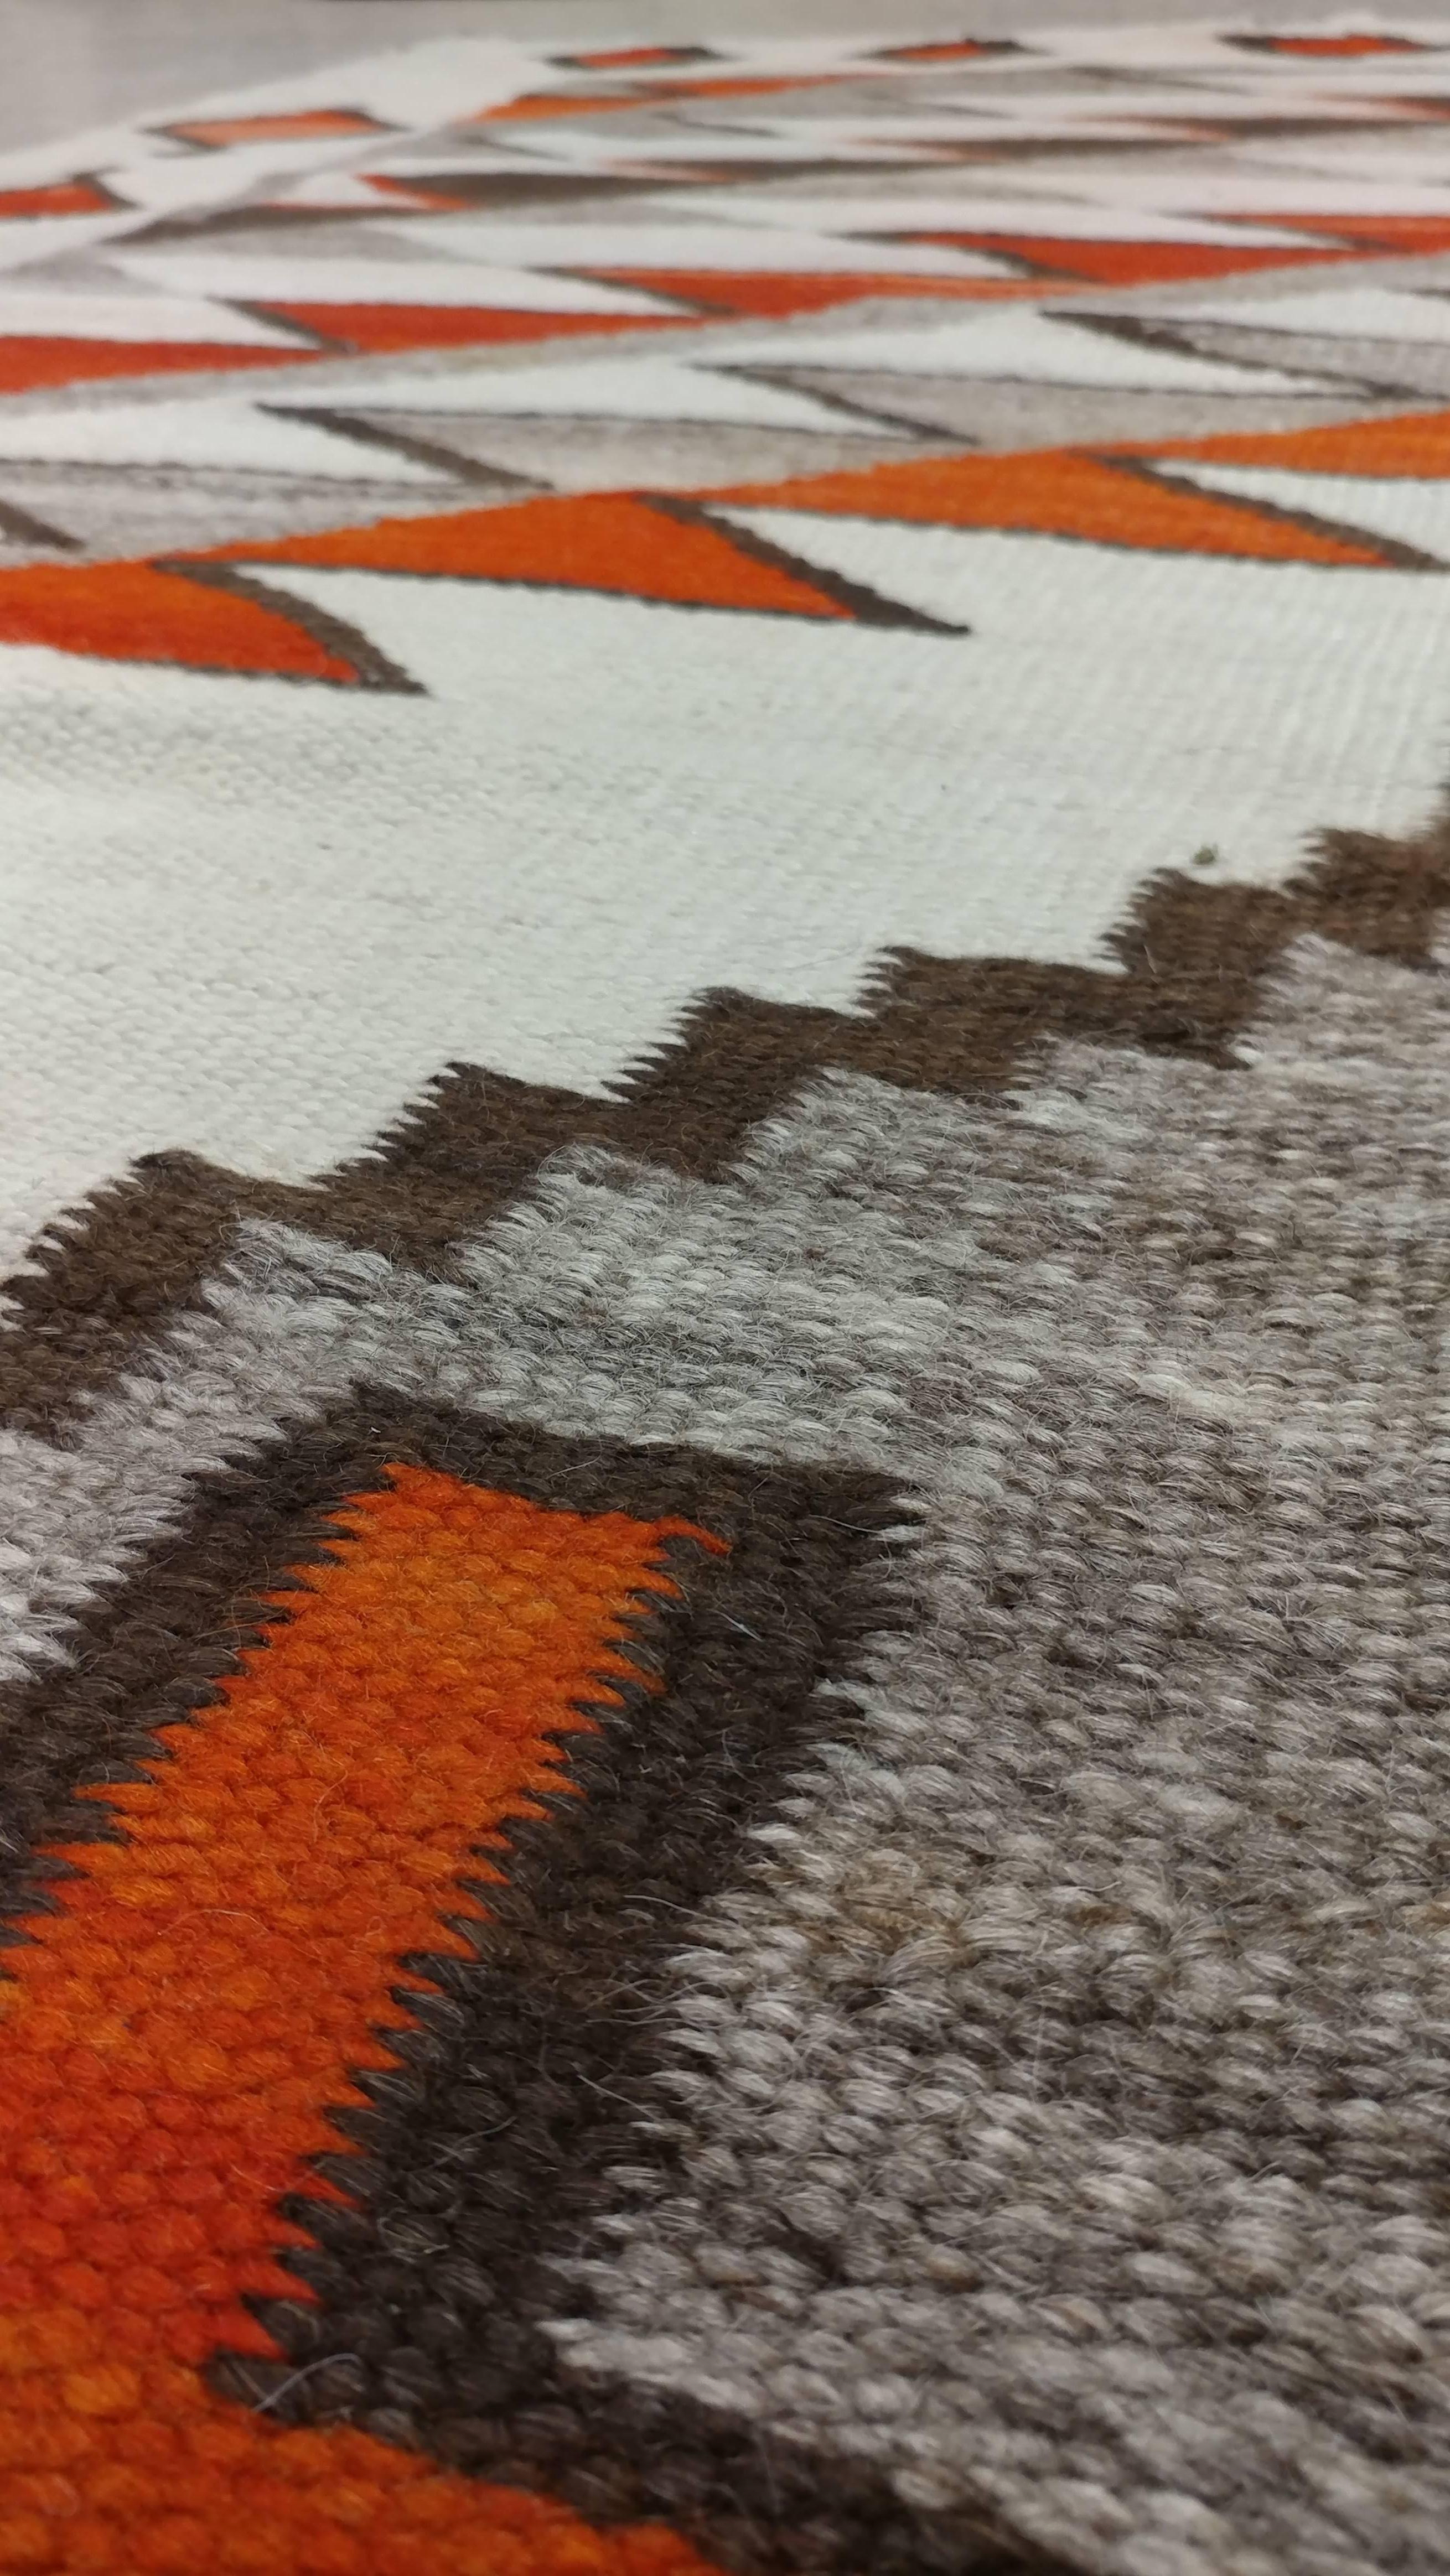 Antique Navajo Carpet, Folk Rug, Handmade Wool Rug, Tan, Coral, Beige 1